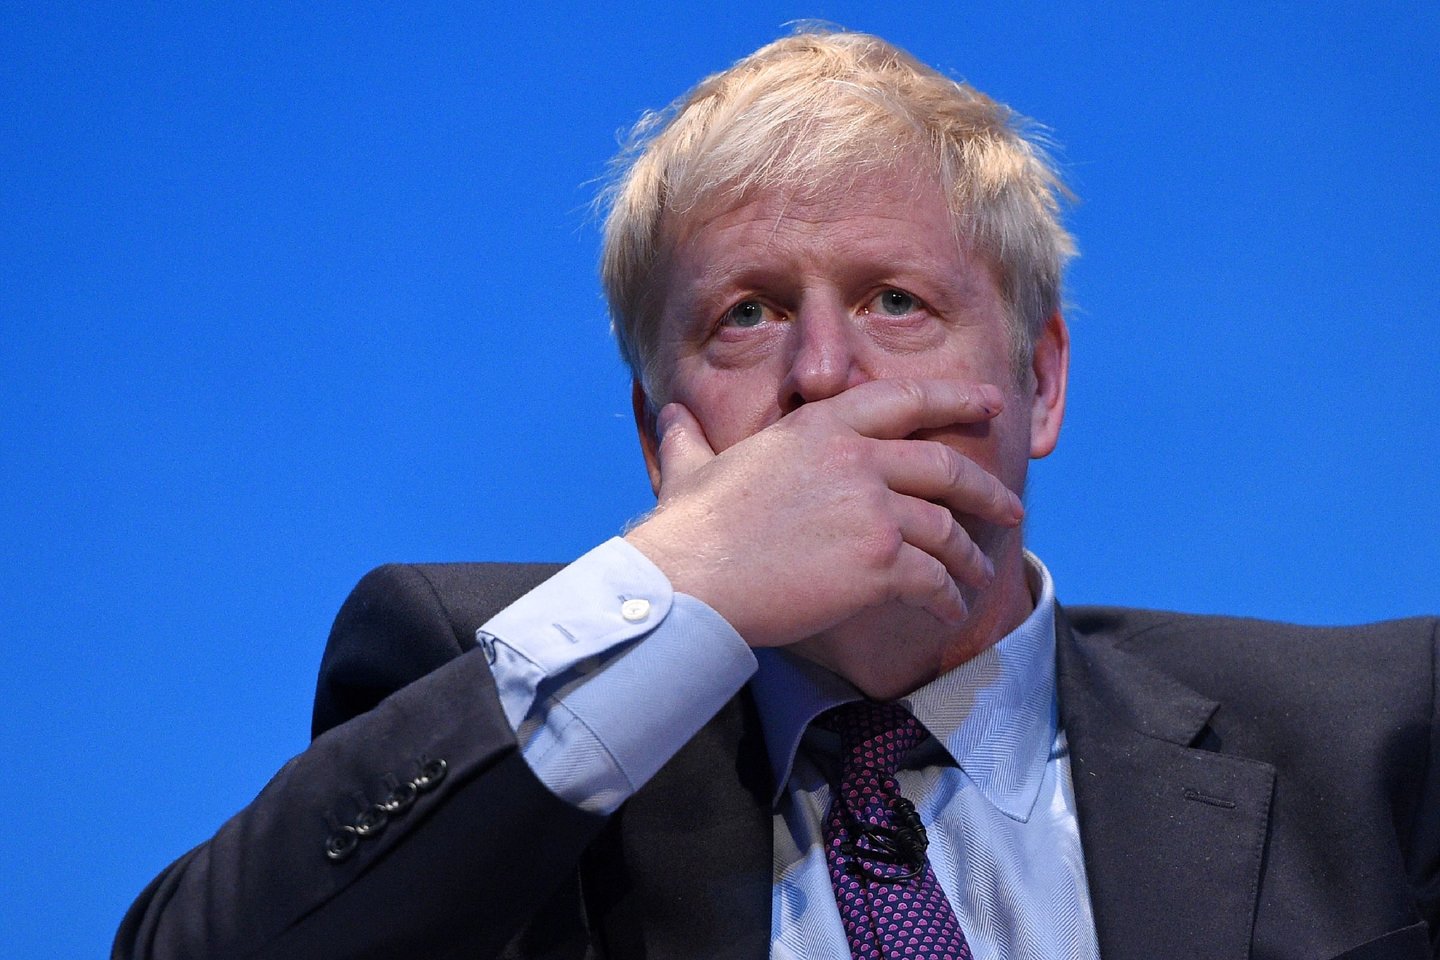  Borisą Johnsoną, vieną iš dviejų likusių pretendentų į Jungtinės Karalystės ministro pirmininko postą, sekmadienį jo partijos veikėjai spaudė paaiškinti pranešimus apie policijos apsilankymą išprovokavusį kivirčą artimoje aplinkoje.<br> AFP/Scanpix nuotr.